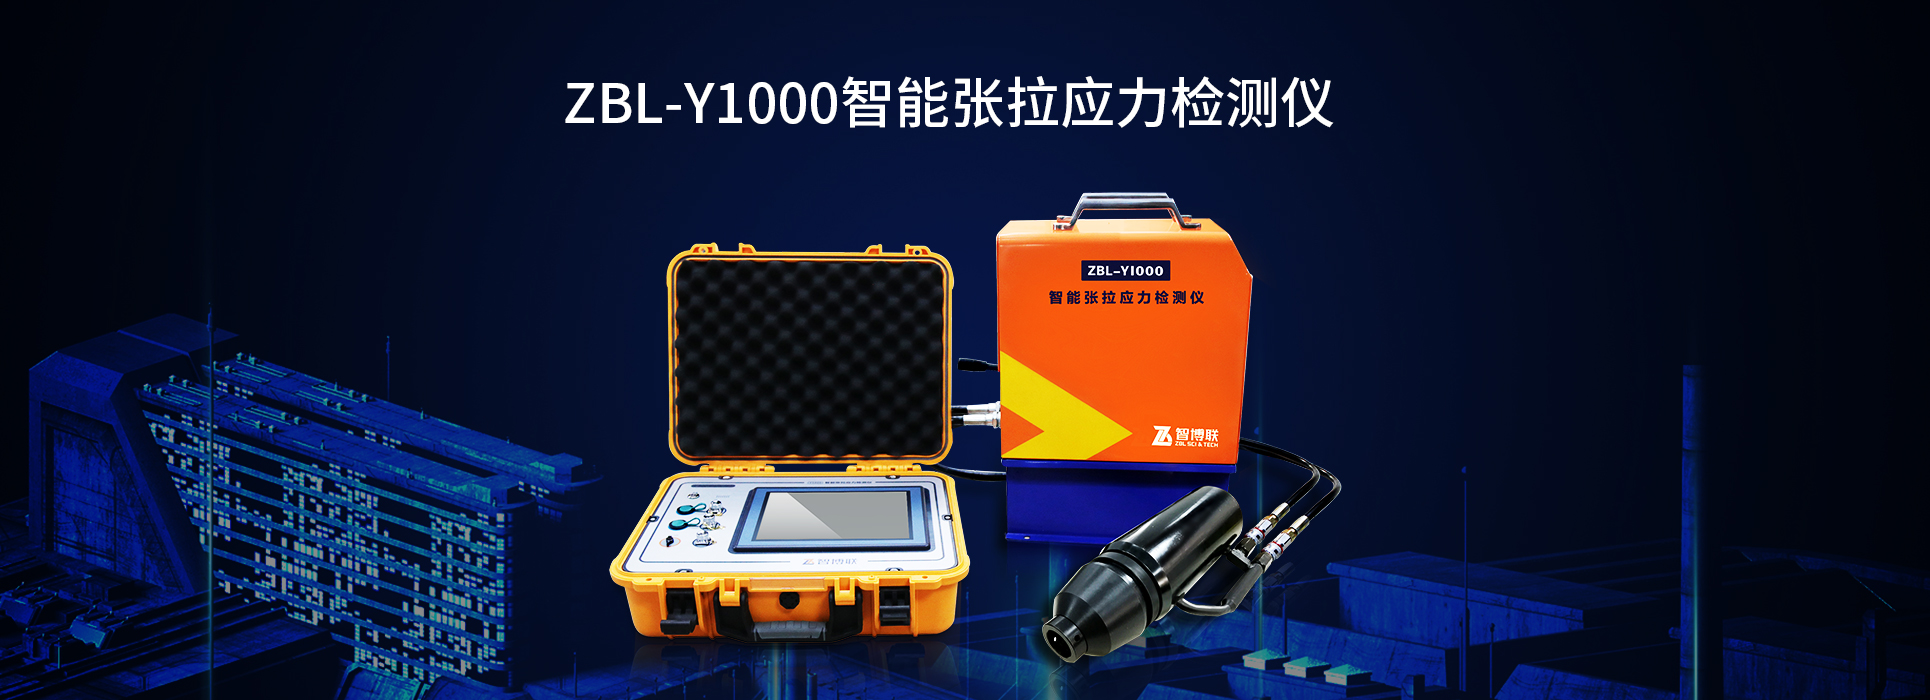 ZBL-Y1000智能张拉应力检测仪